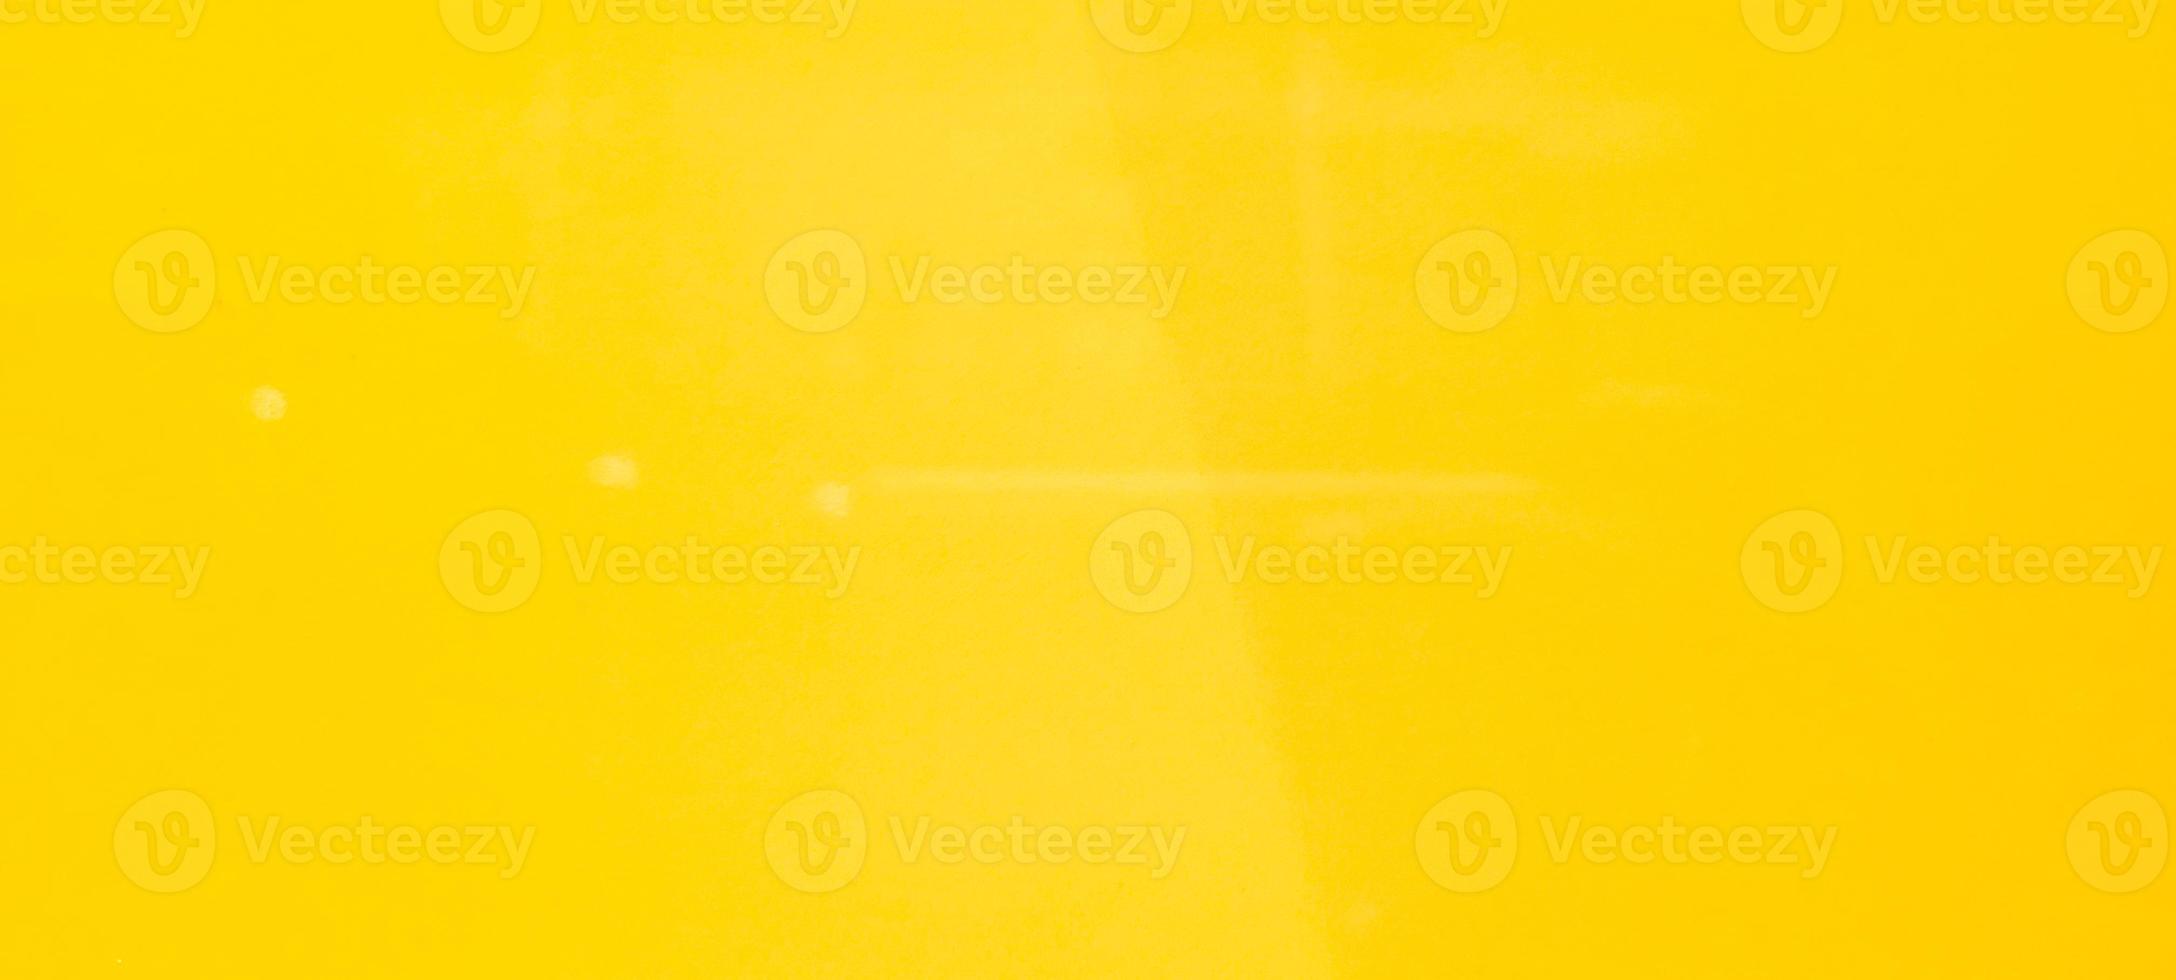 fondo amarillo claro y dorado con sombra foto